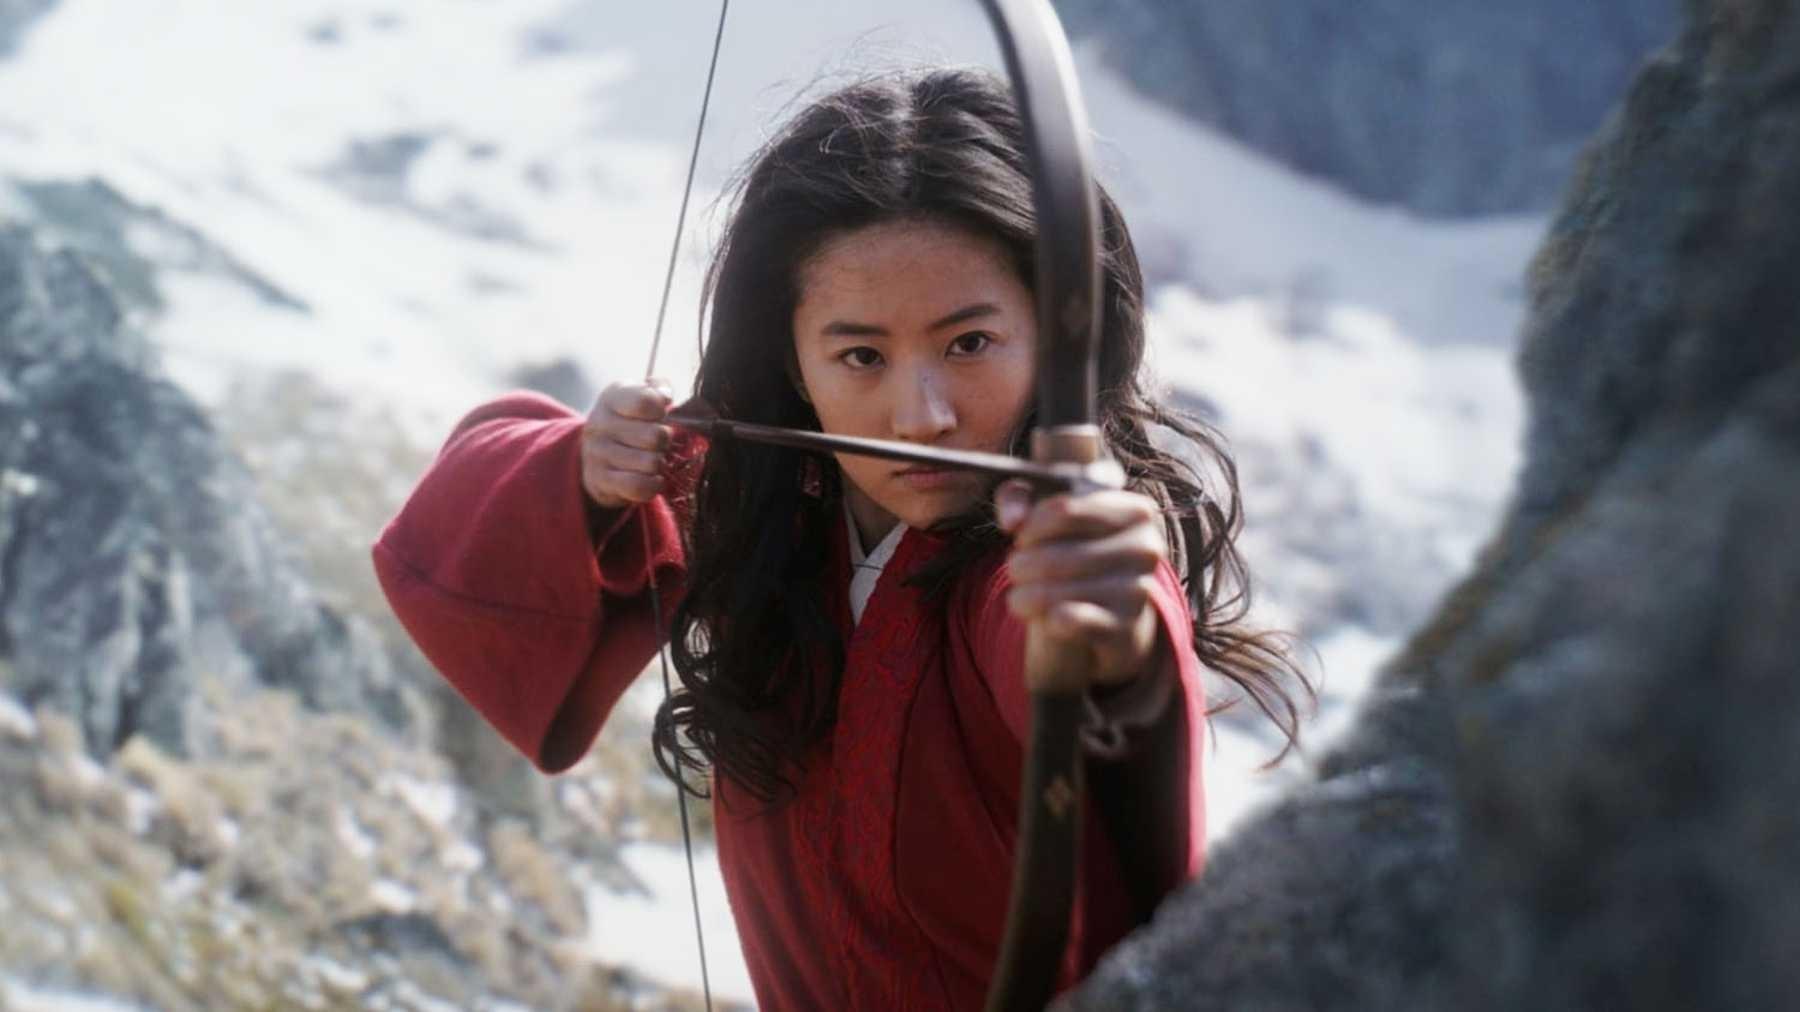 Lançamento de Mulan no streaming pode matar a sala de cinema - 05/09/2020 - UOL TILT